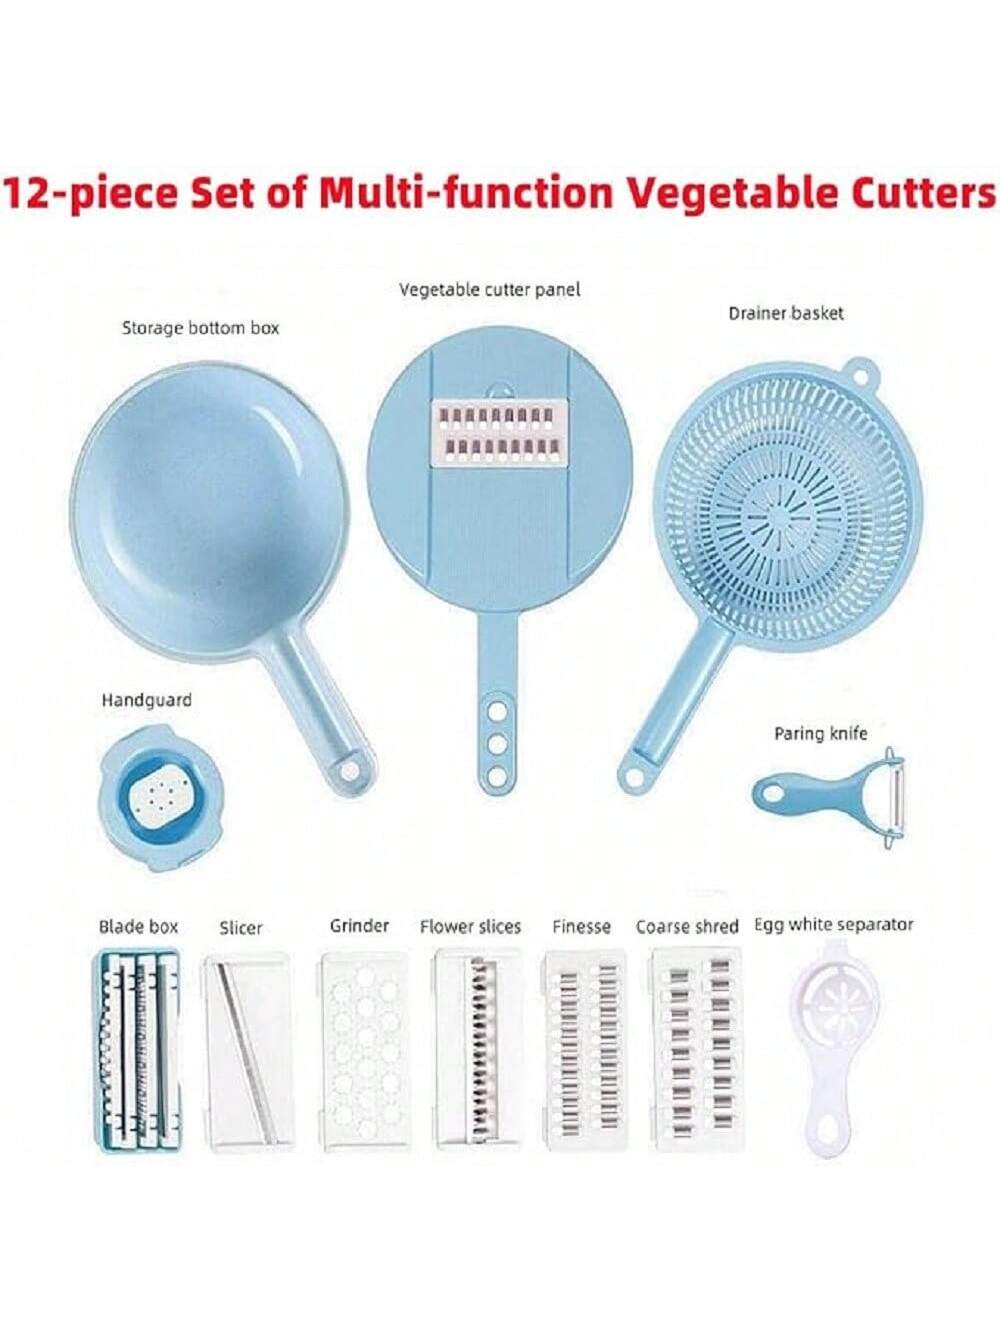 1set Vegetable Chopper & Fruit Slicer, Multifunctional Manual Food